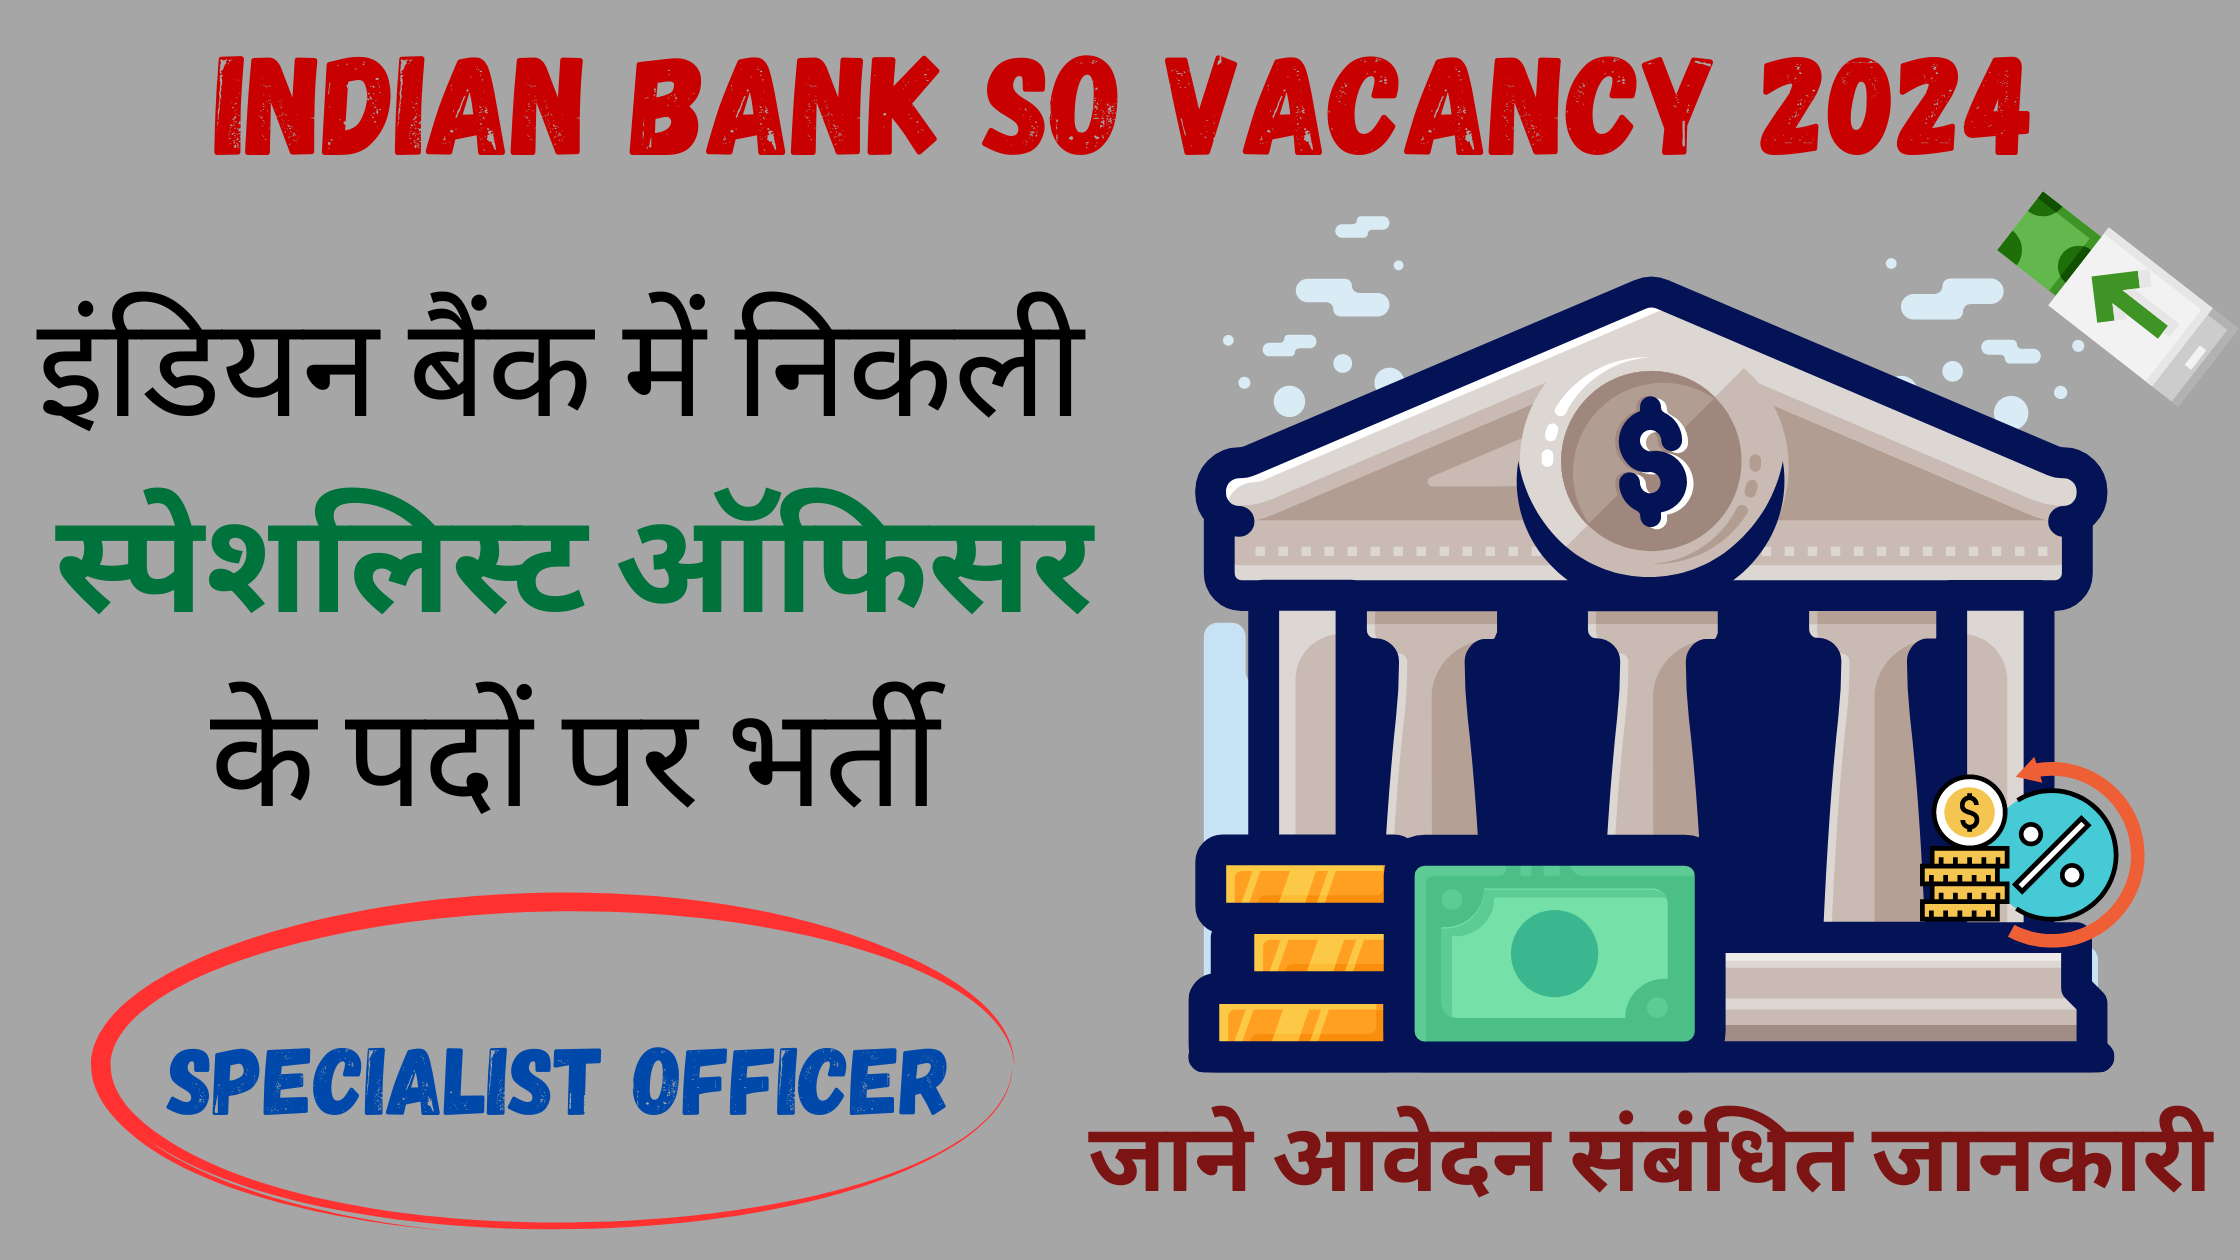 Indian Bank SO Vacancy 2024